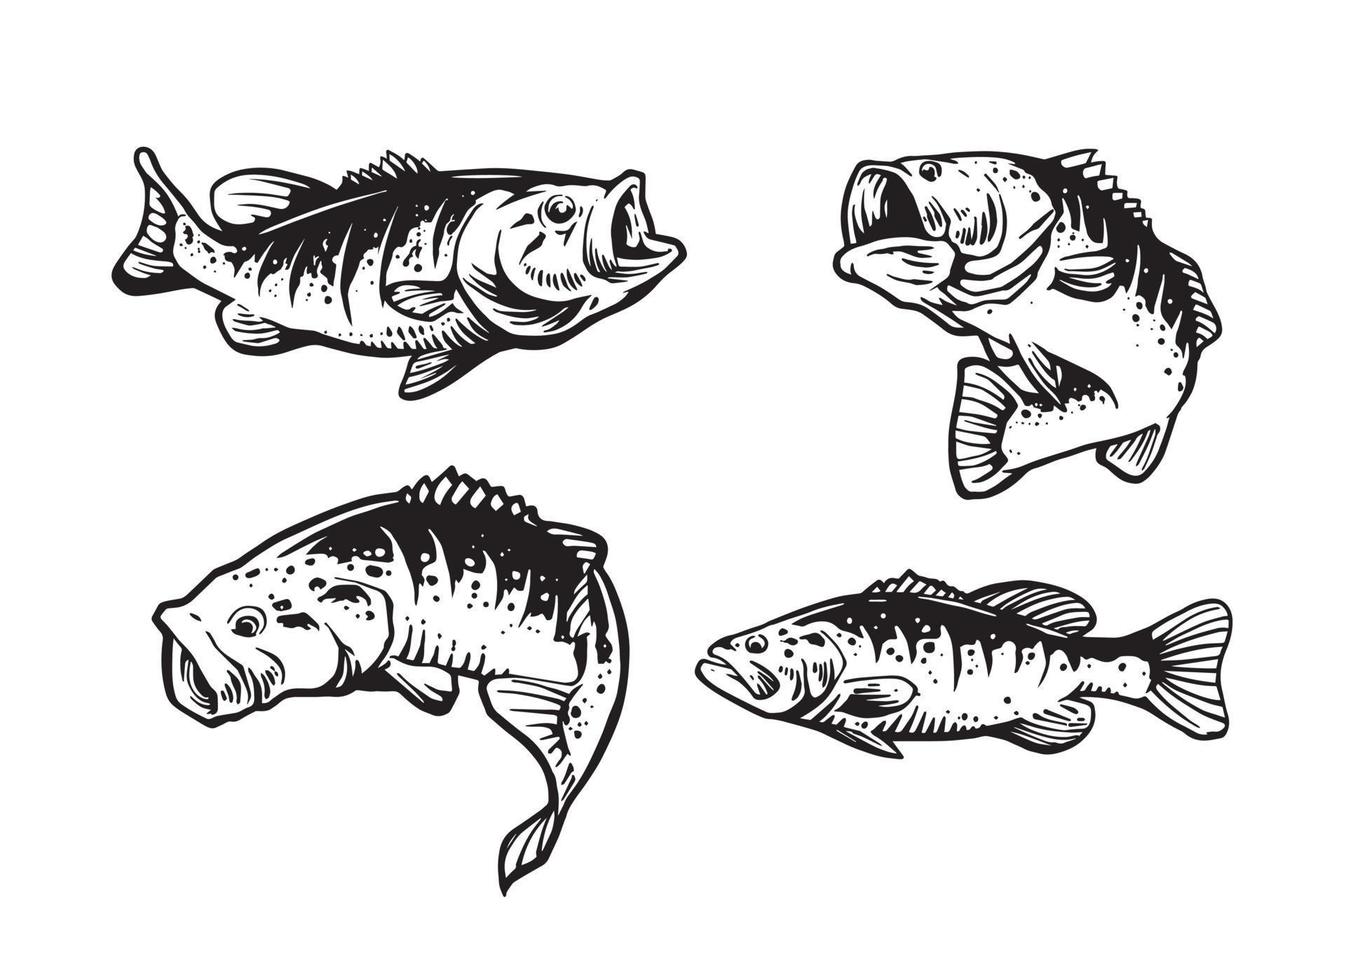 https://static.vecteezy.com/ti/vettori-gratis/p1/5094778-illustrazione-set-di-pesce-largo-vettoriale.jpg